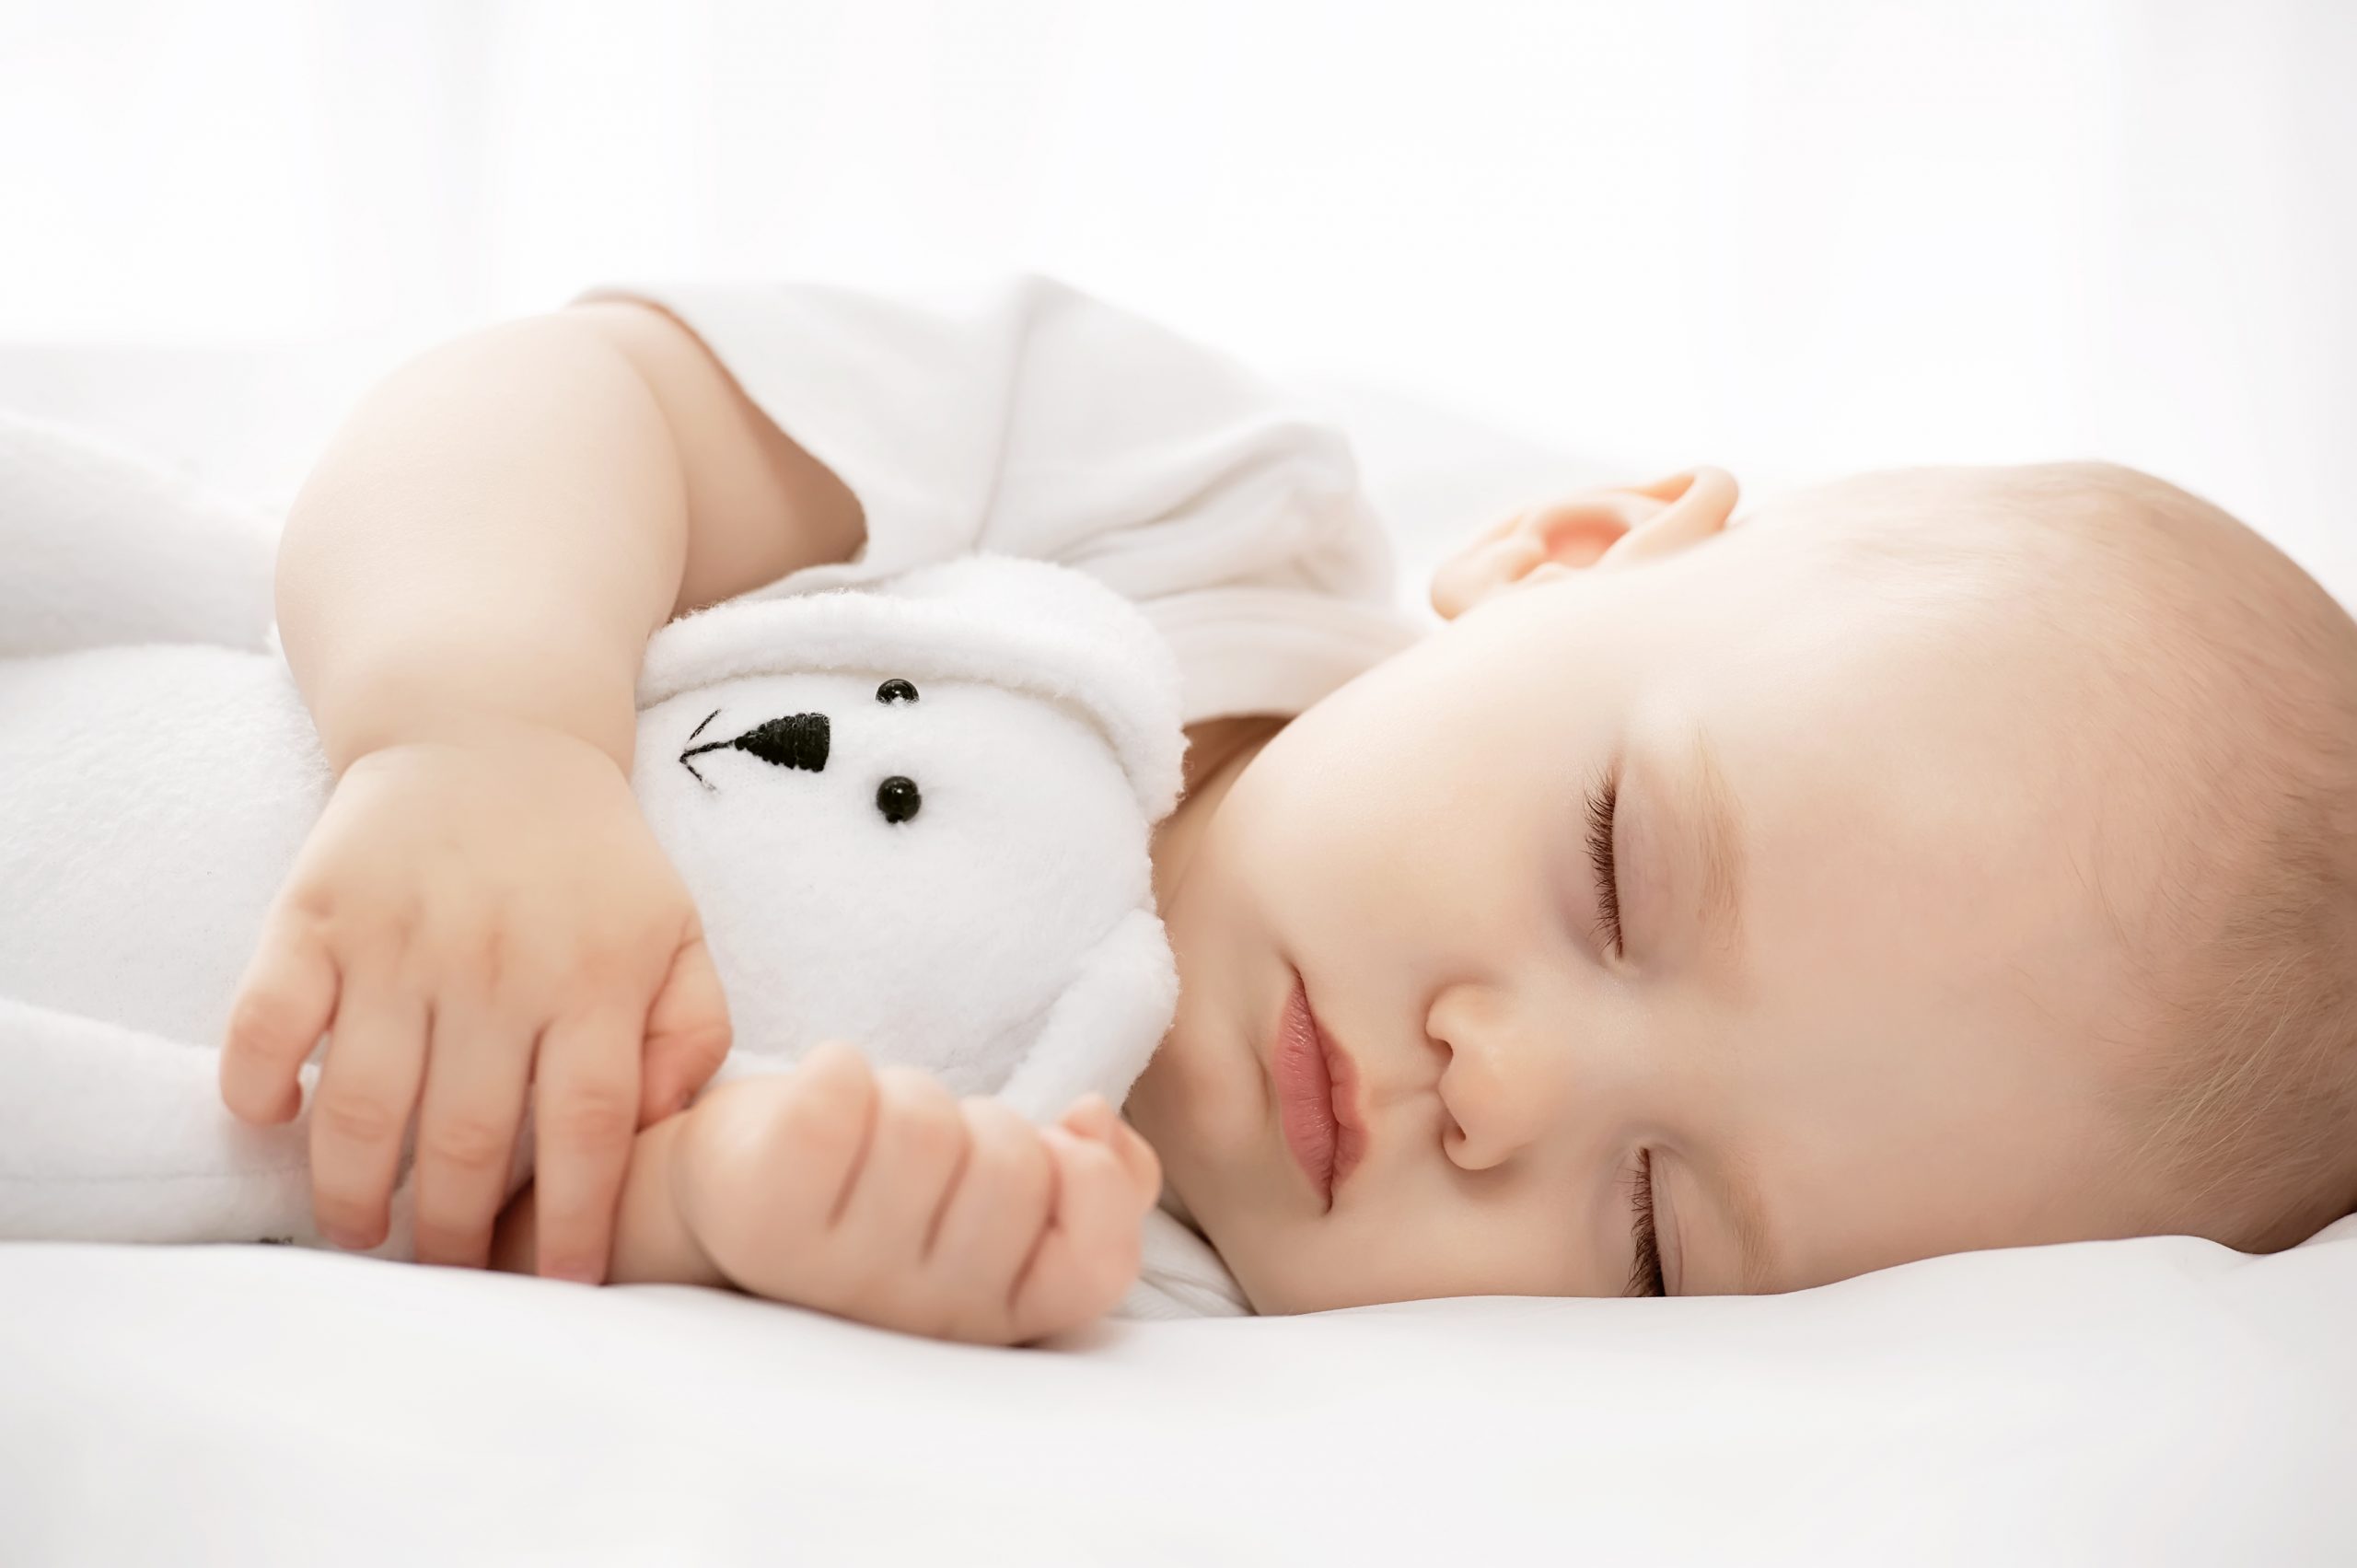 Khoảng thời gian tối đa cho giấc ngủ của một đứa trẻ là 5 tiếng.